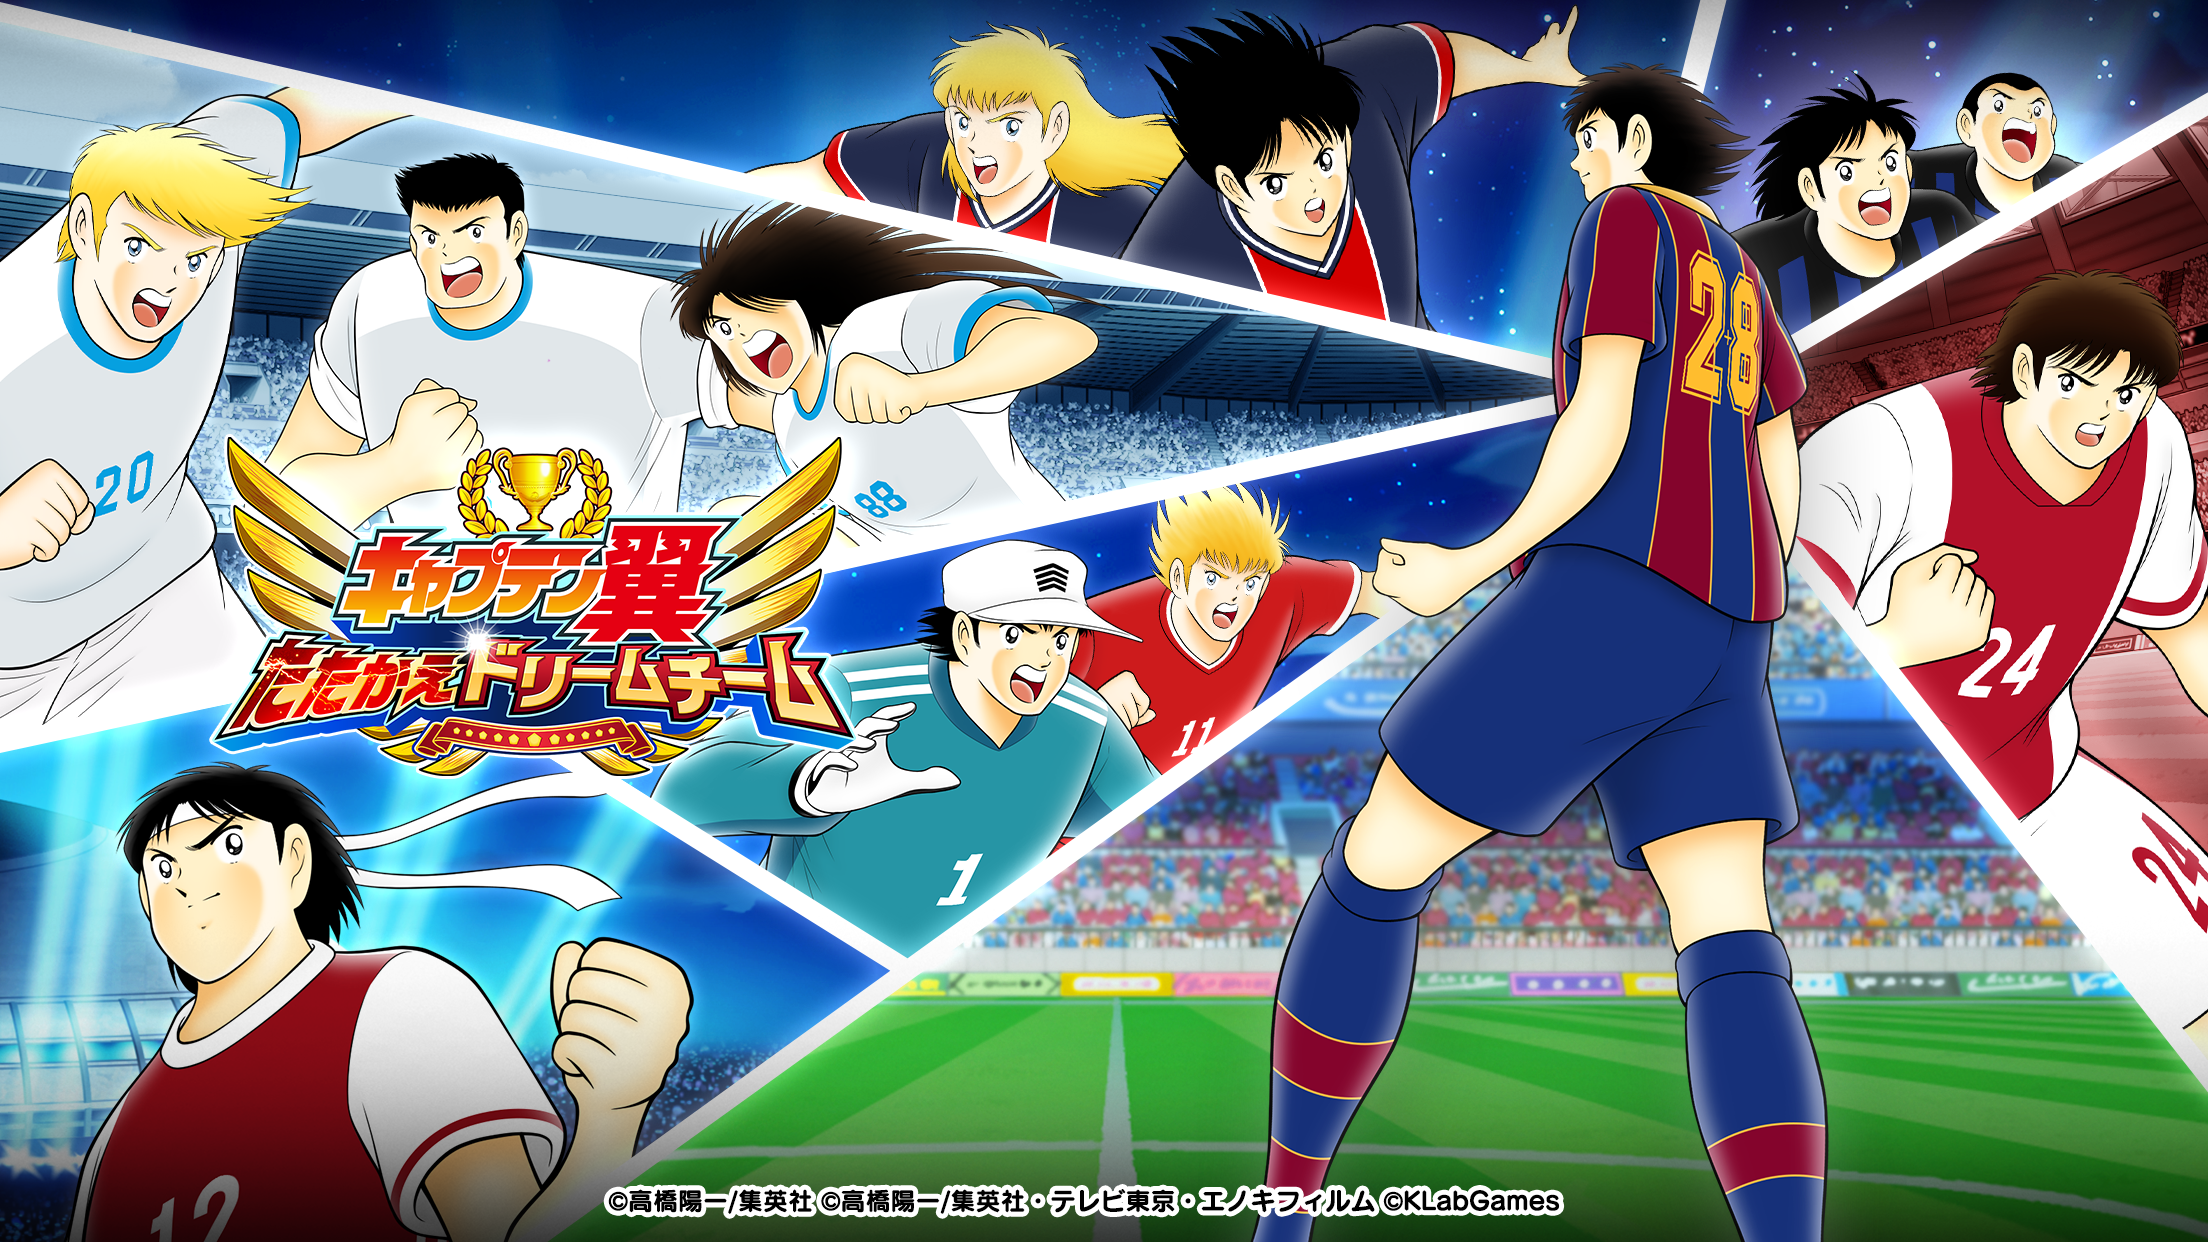 Screenshot 1 of Đội trưởng Tsubasa: Trò chơi đội bóng trong mơ 6.4.4